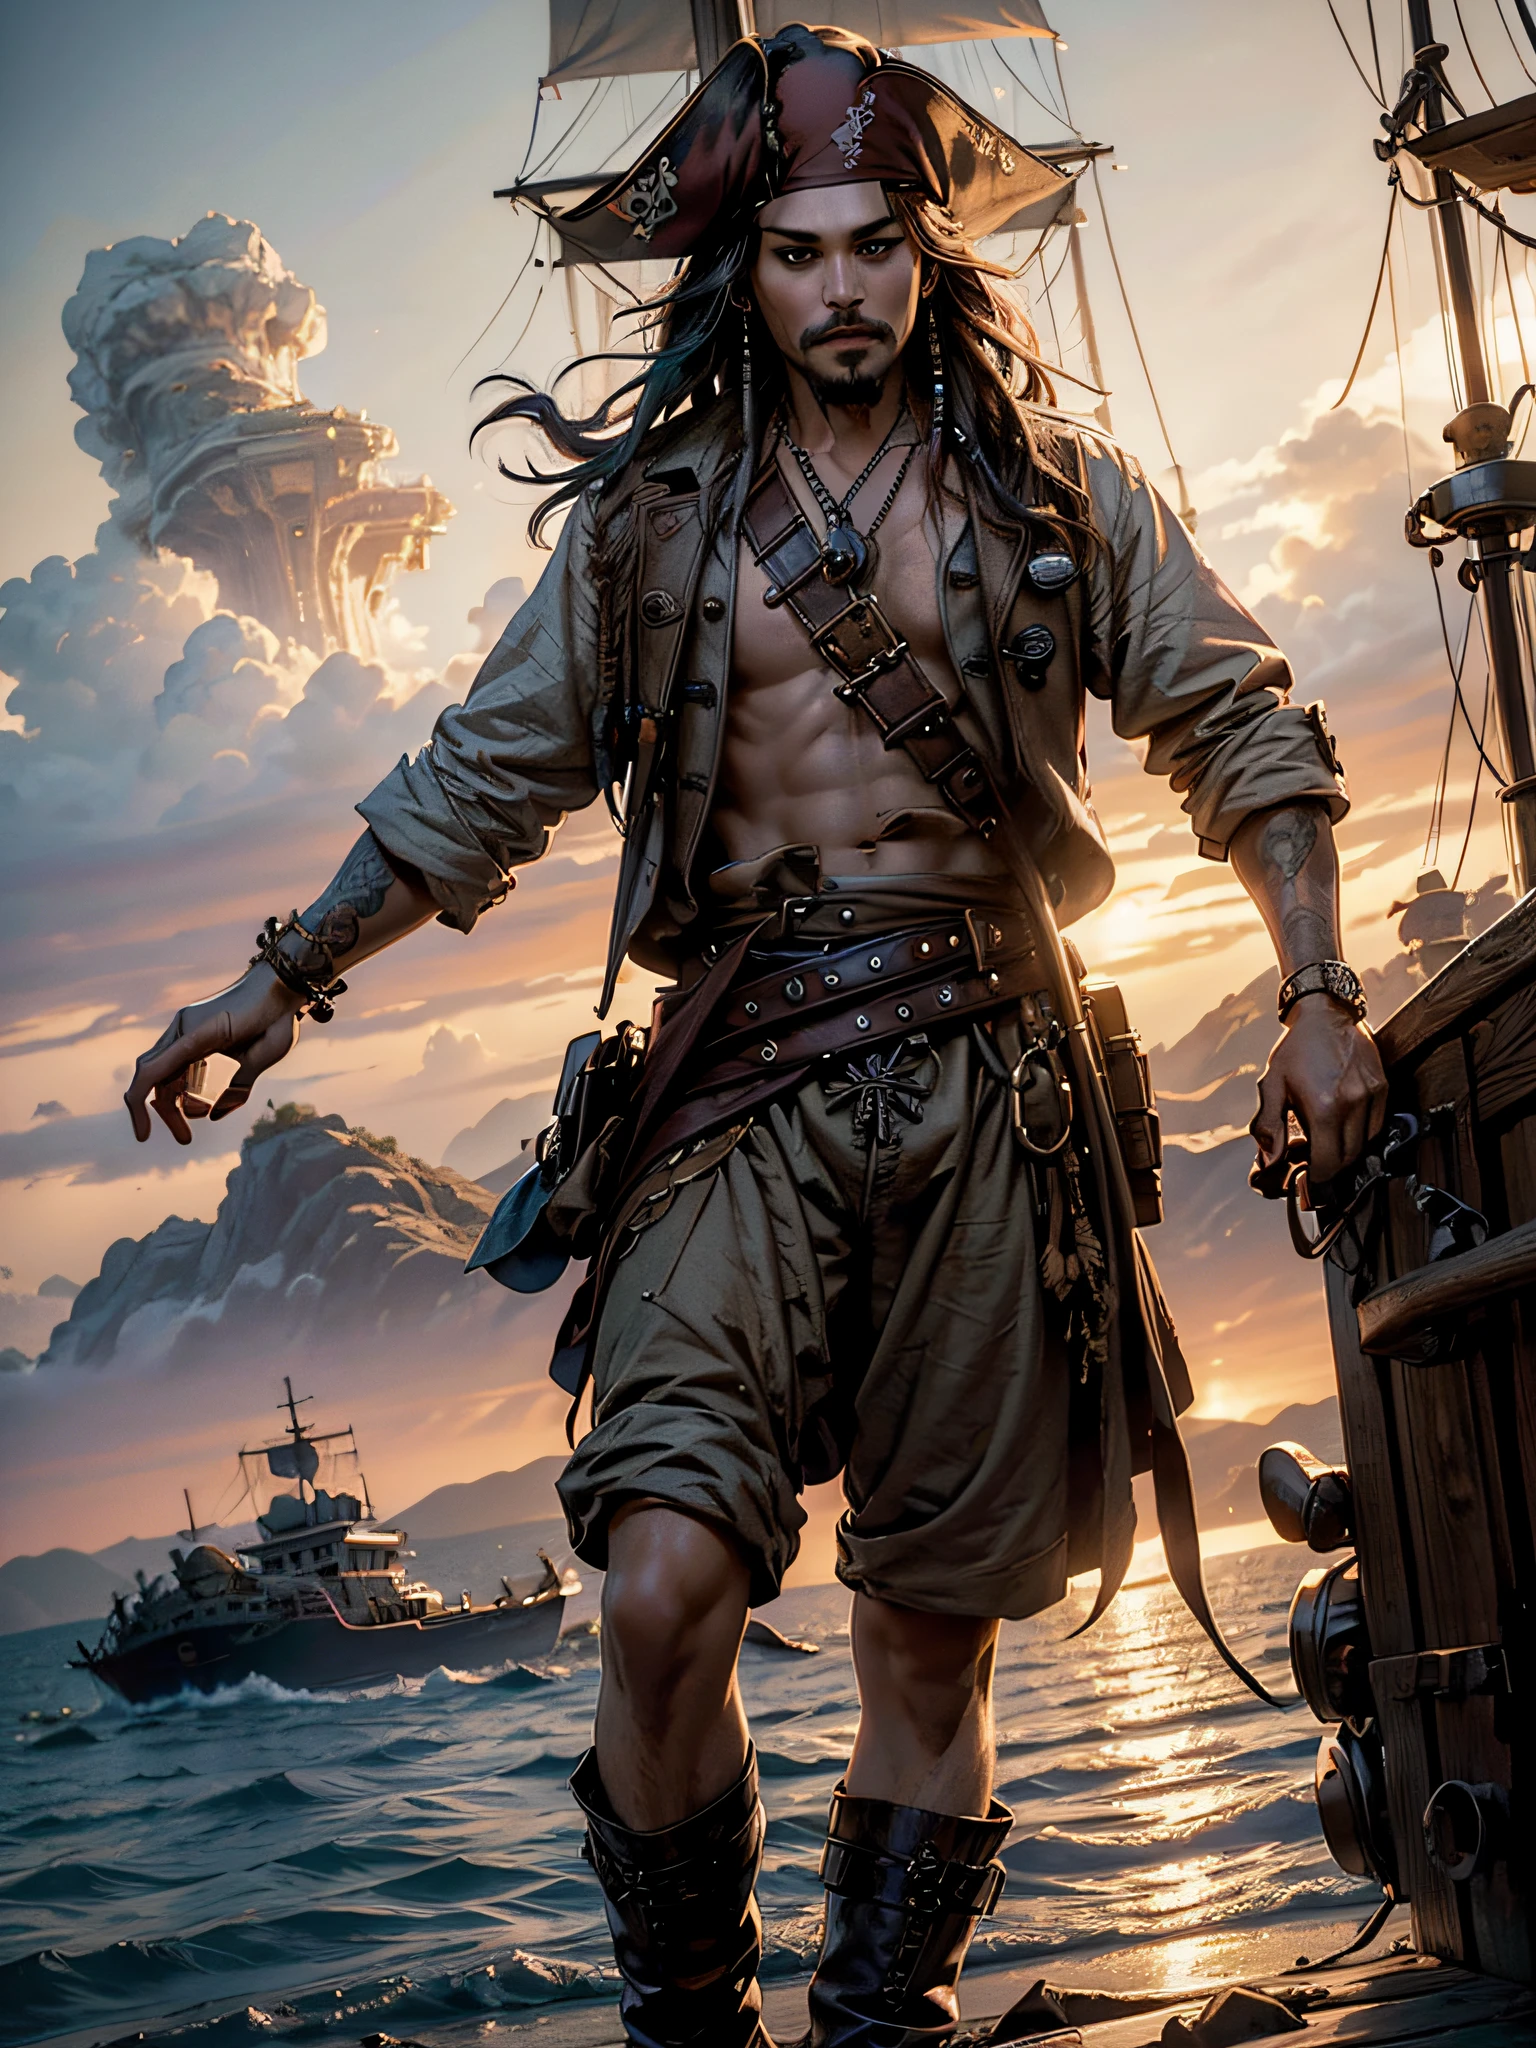 Jack Sparrow, am Ende seines Piratenschiffs stehend, hält seinen Schnurrbart, grinsend, Piratenflagge am Mast, Ganzkörper, {extrem detailliertes 8k CG-Unit-Hintergrundbild}, expansive Landschaftsfotografie, (eine zentrierte Sicht mit Fokus auf Charakter und Setting), (Weite, offene Feldsicht), (Hochwinkelaufnahme), (Markieren: 1.6), (gedimmtes Licht: 1.6), (warme Lichtquelle: 1.8), komplexe Details, (schillernde Farben: 1.5), (Helle Beleuchtung), (stimmungsvolle Beleuchtung), verträumt, Epos